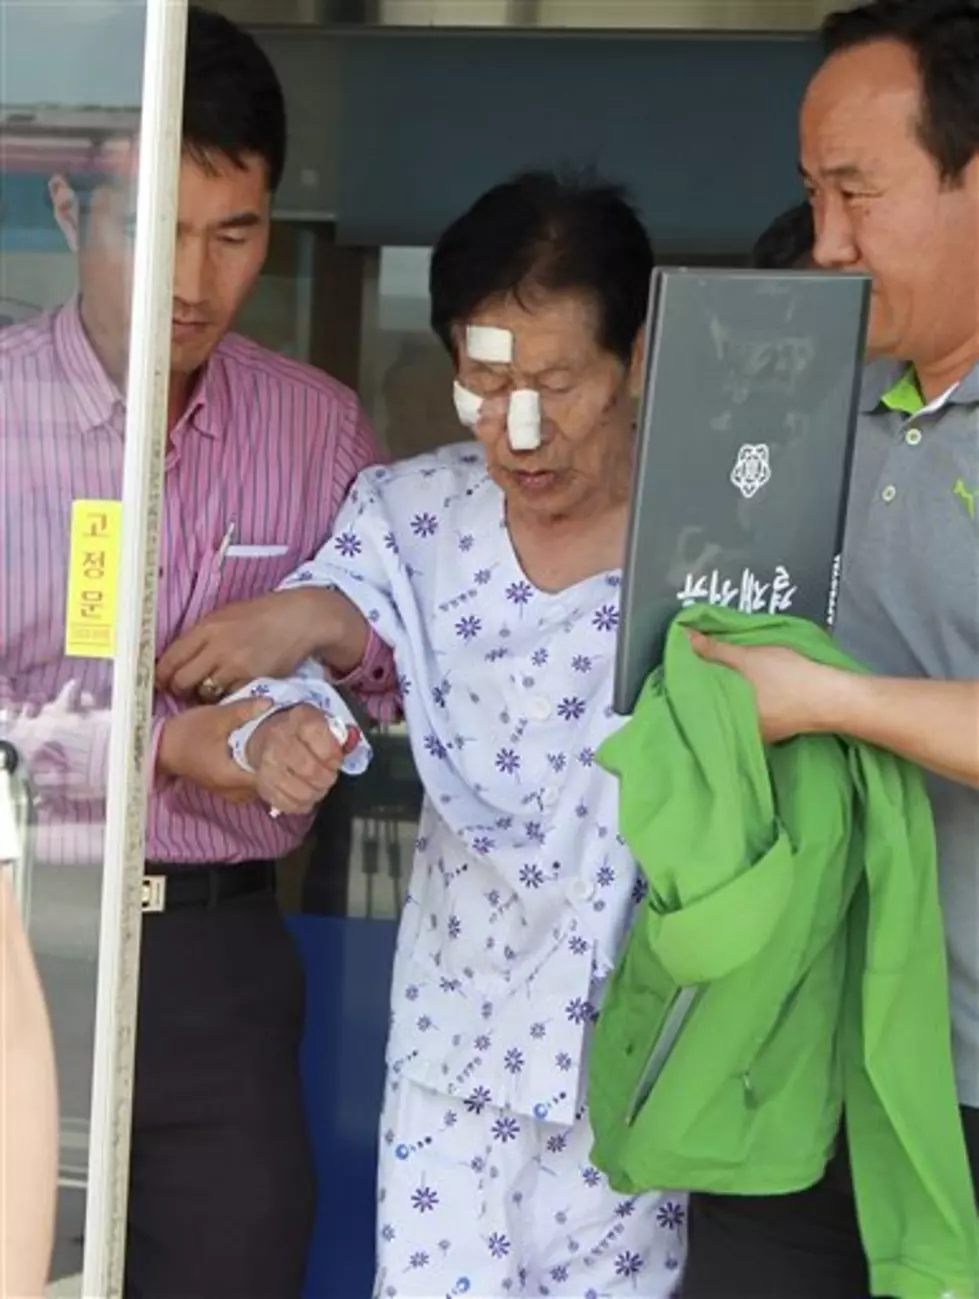 Fire Kills 21 at South Korean Hospital for Elderly